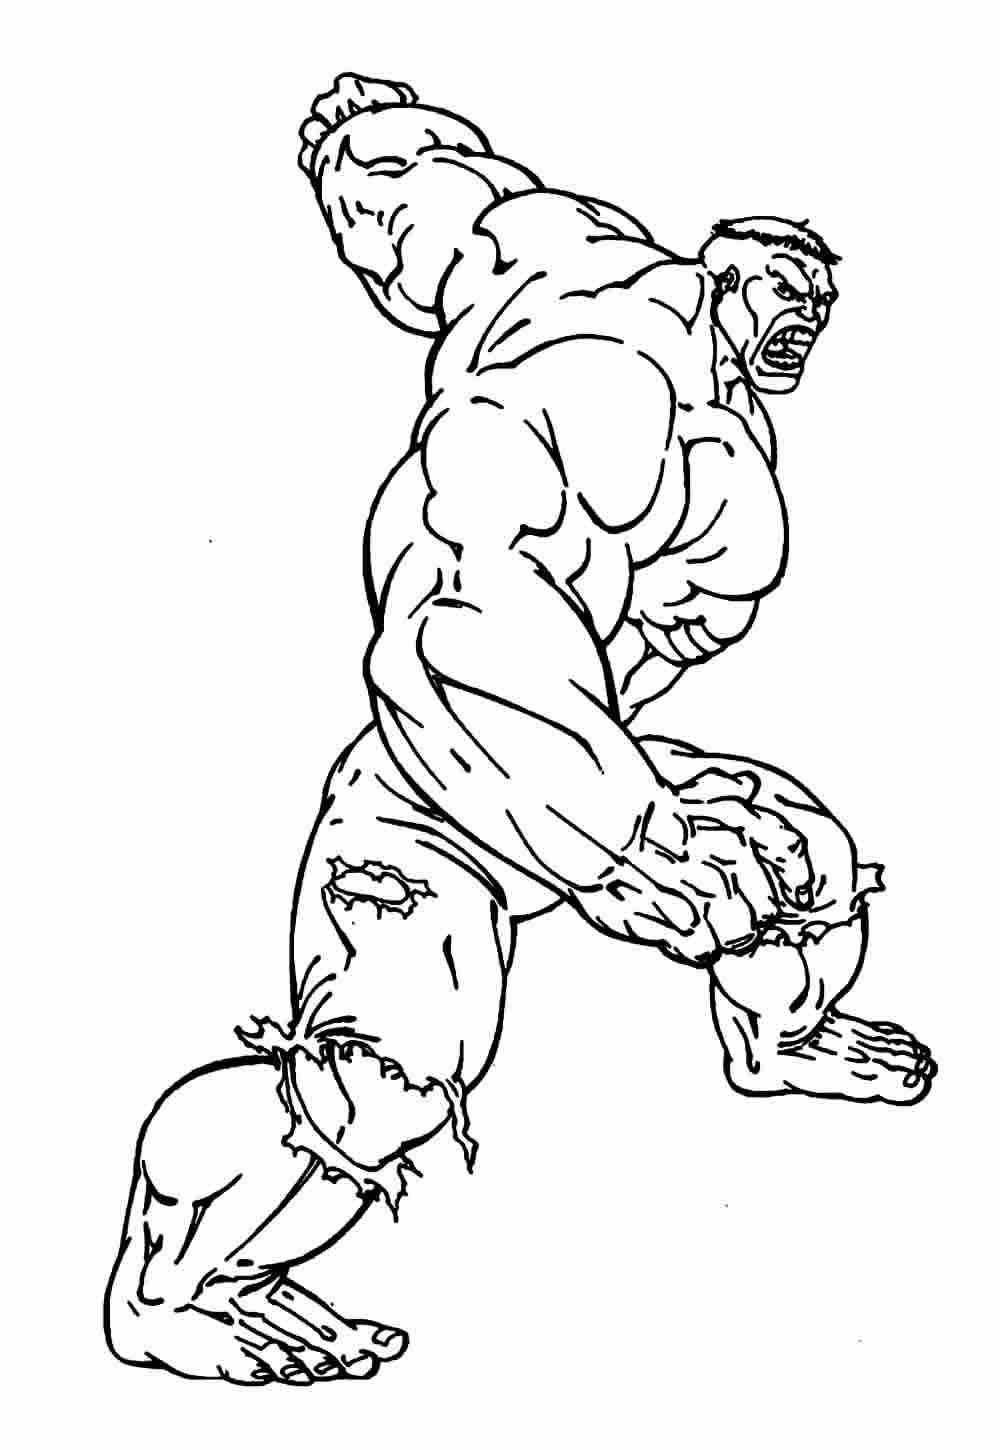 Imagem do Hulk para colorir